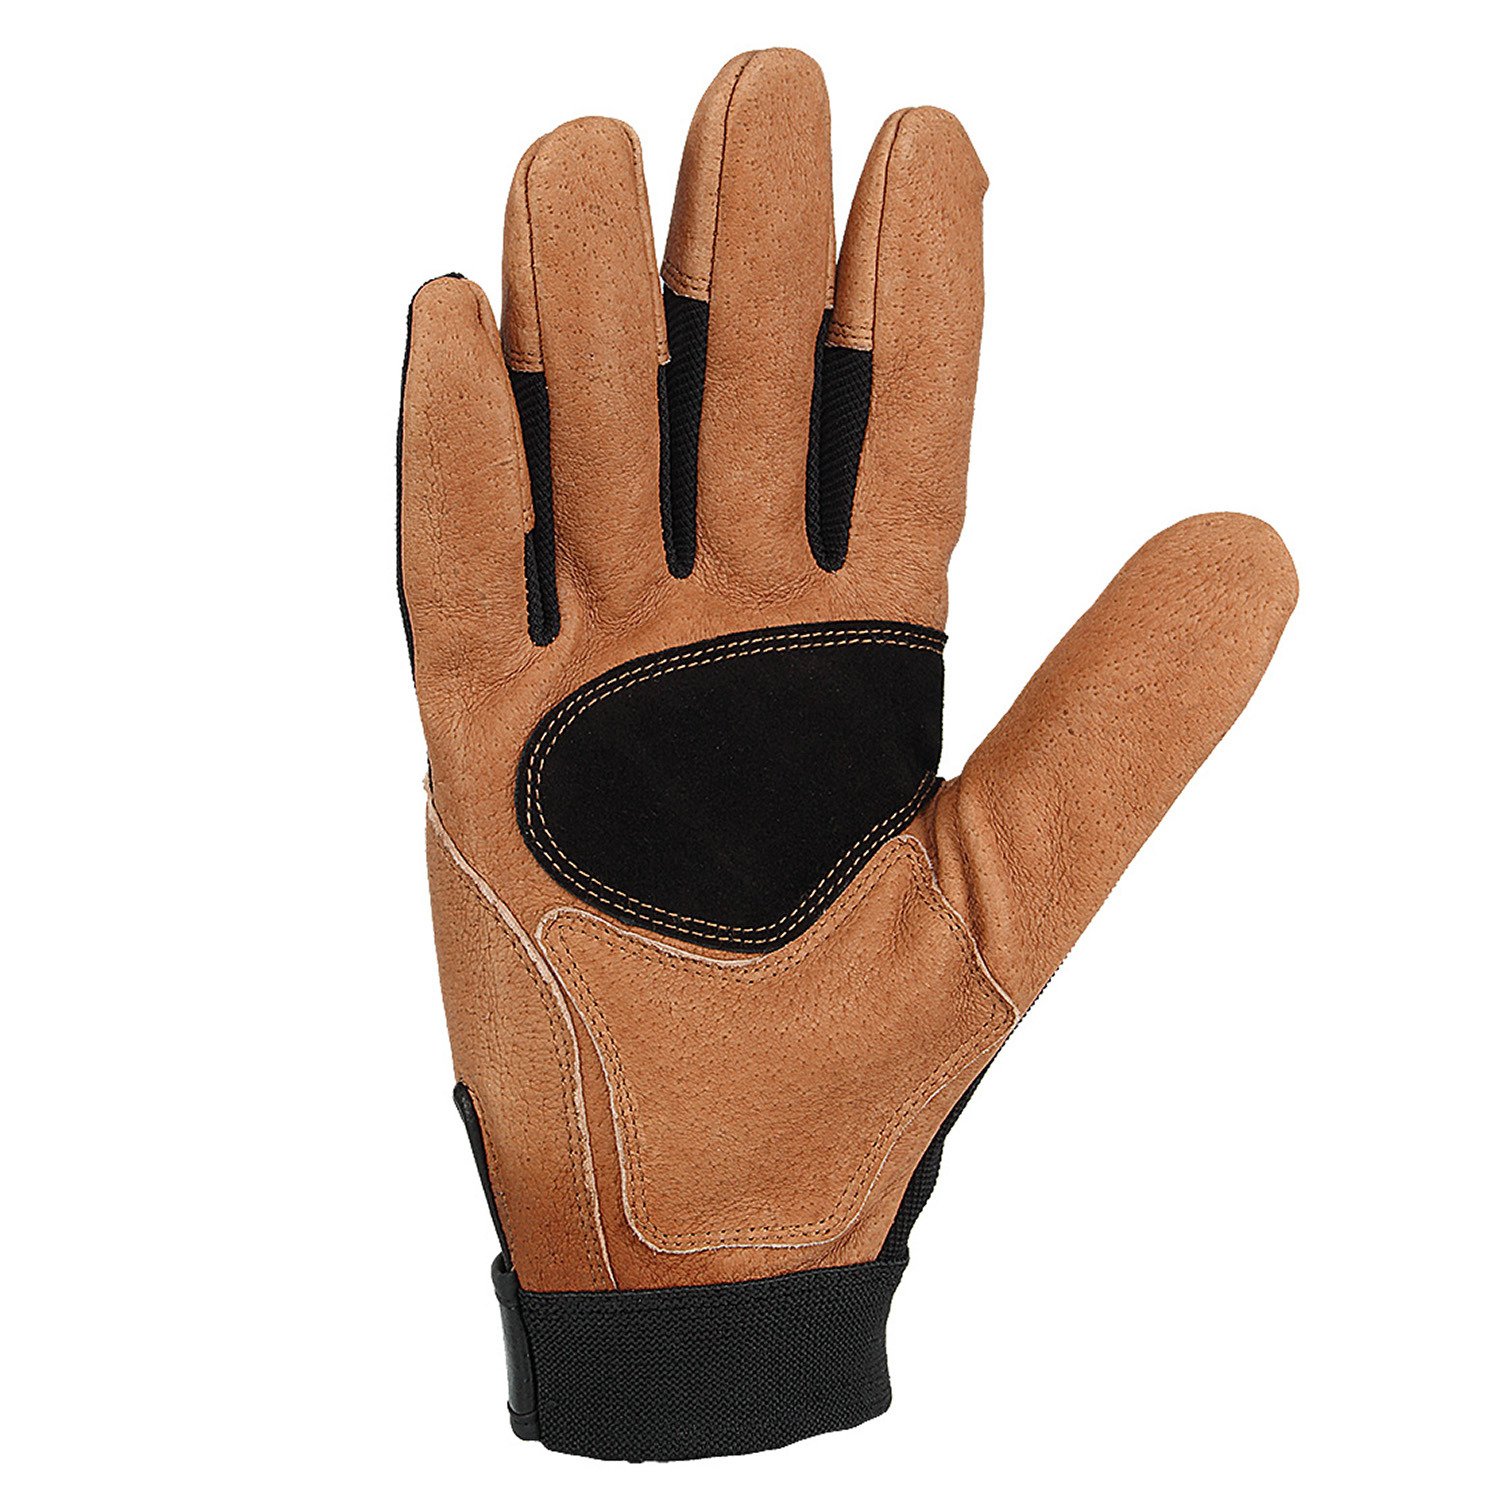 Carhartt Men's The Dex II High-Dexterity Work Gloves